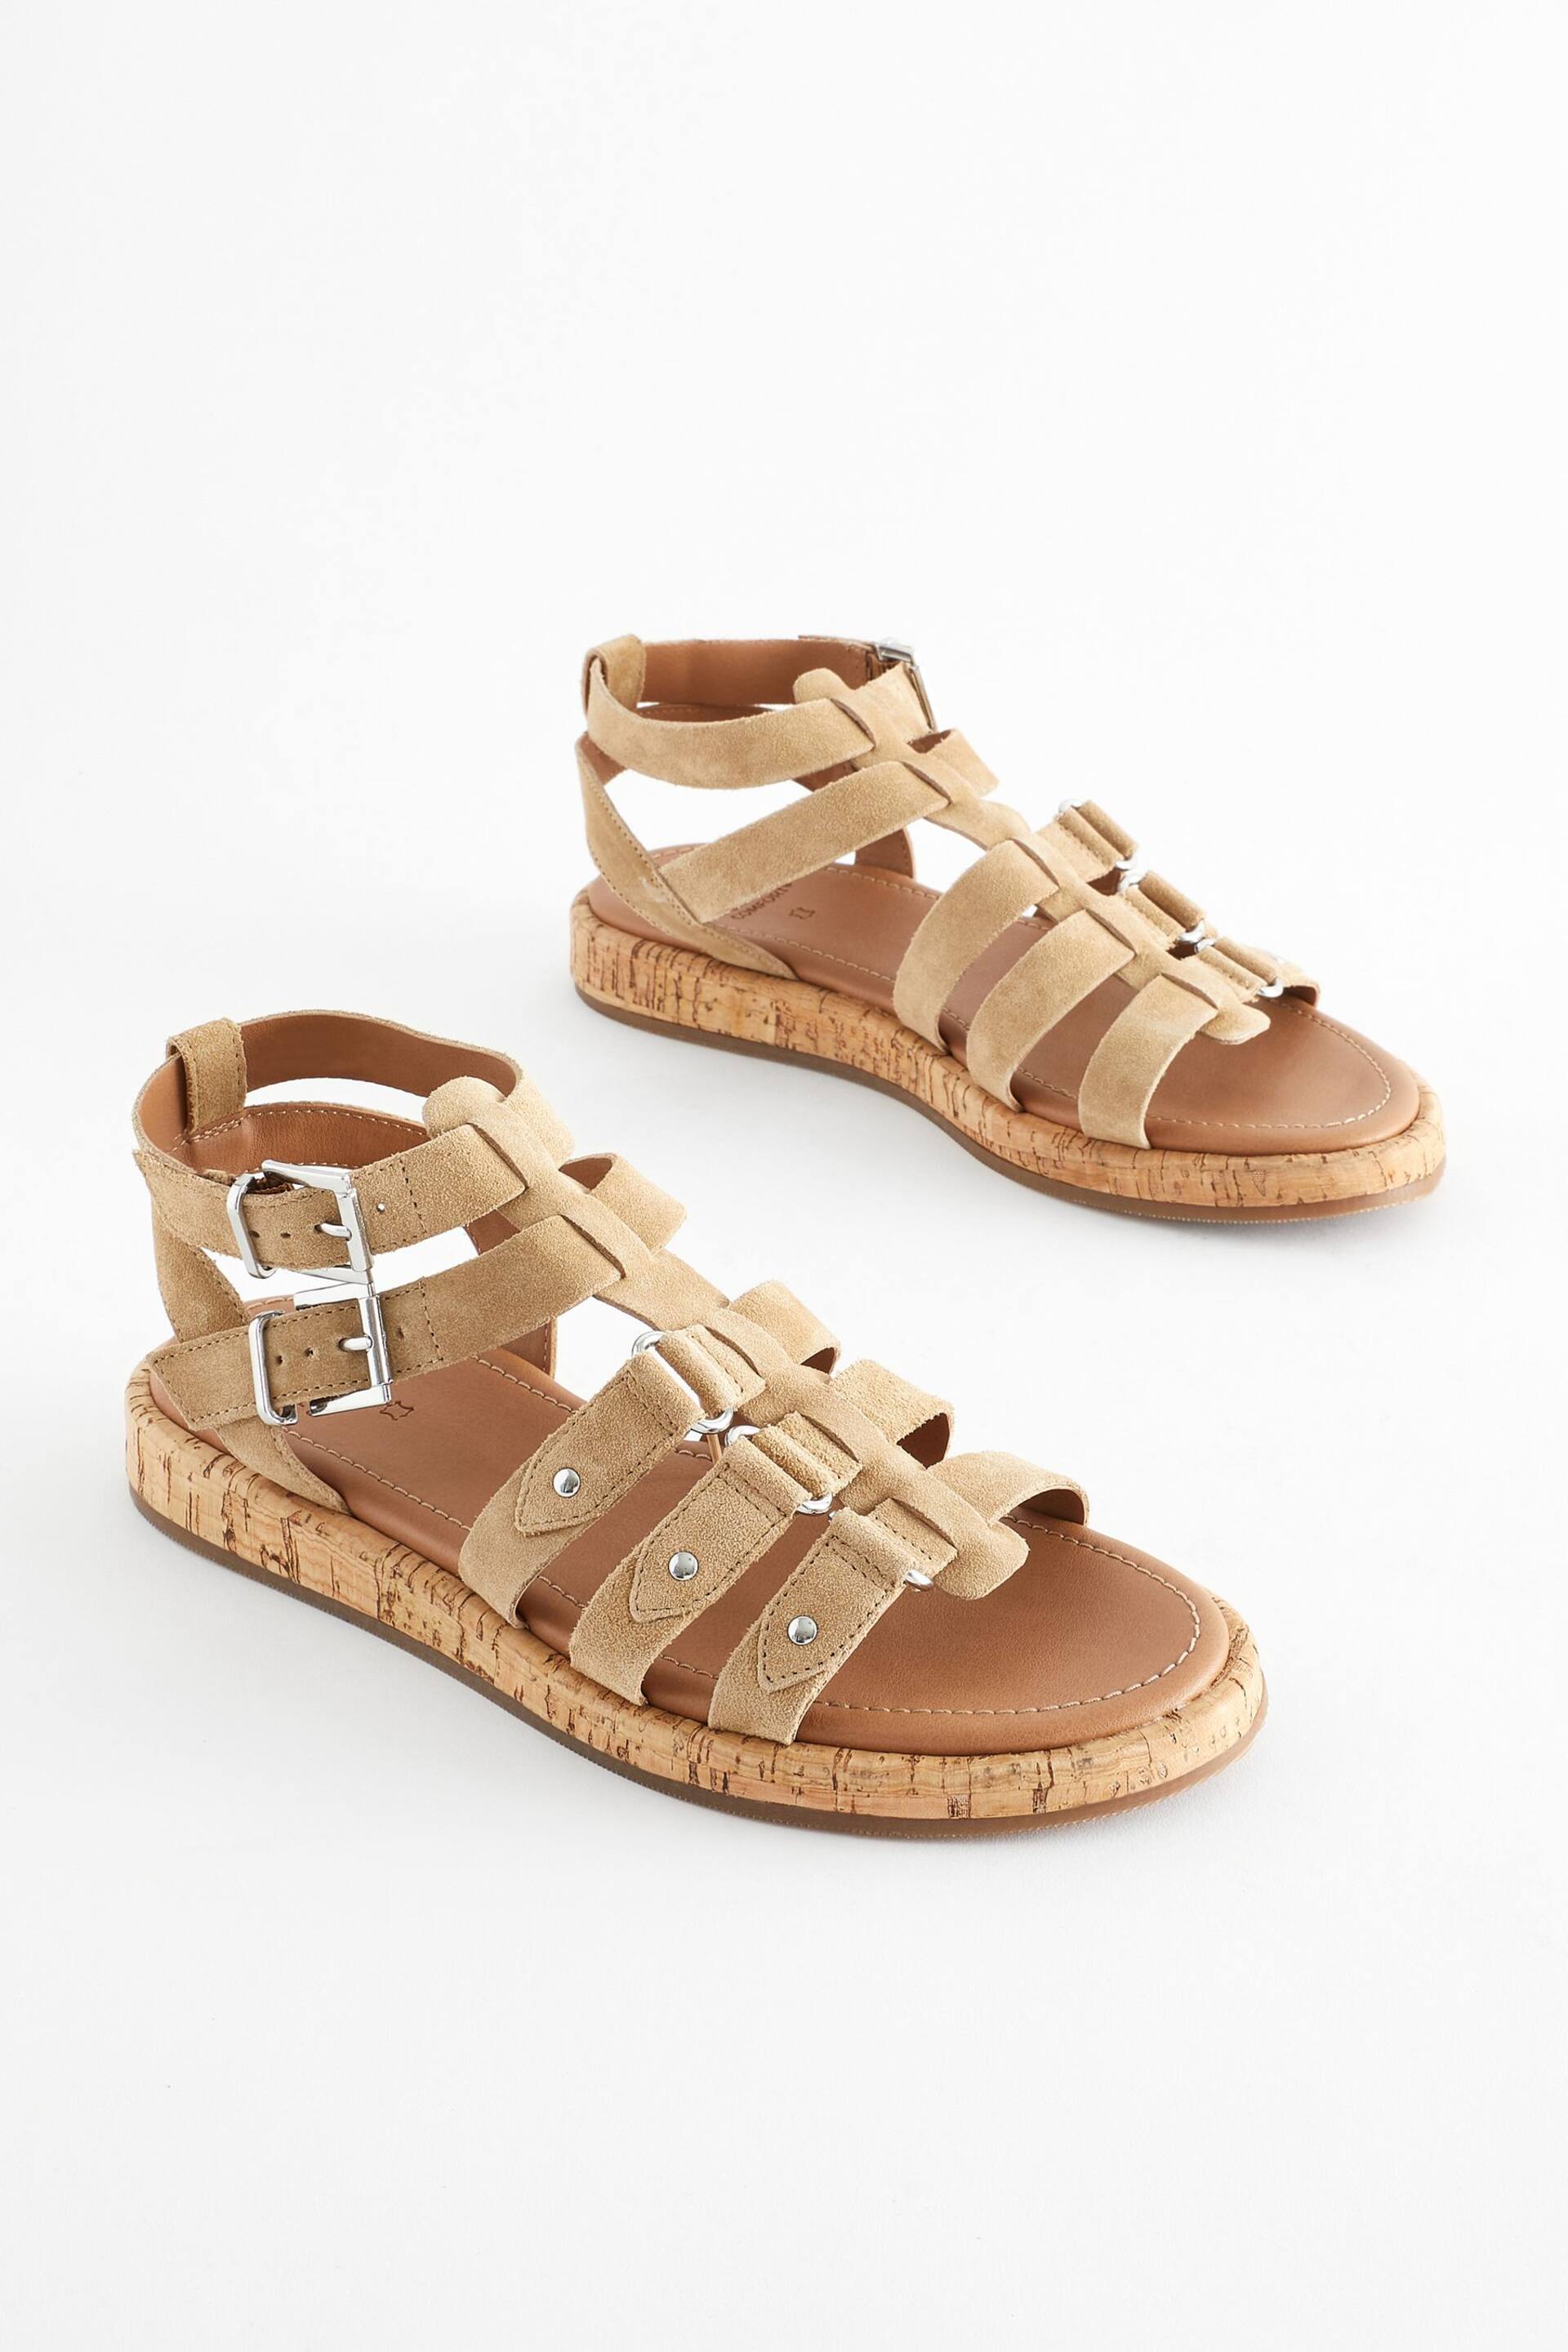 Sand Brown Regular/Wide Fit Forever Comfort® Leather Gladiator Sandals - Image 1 of 6